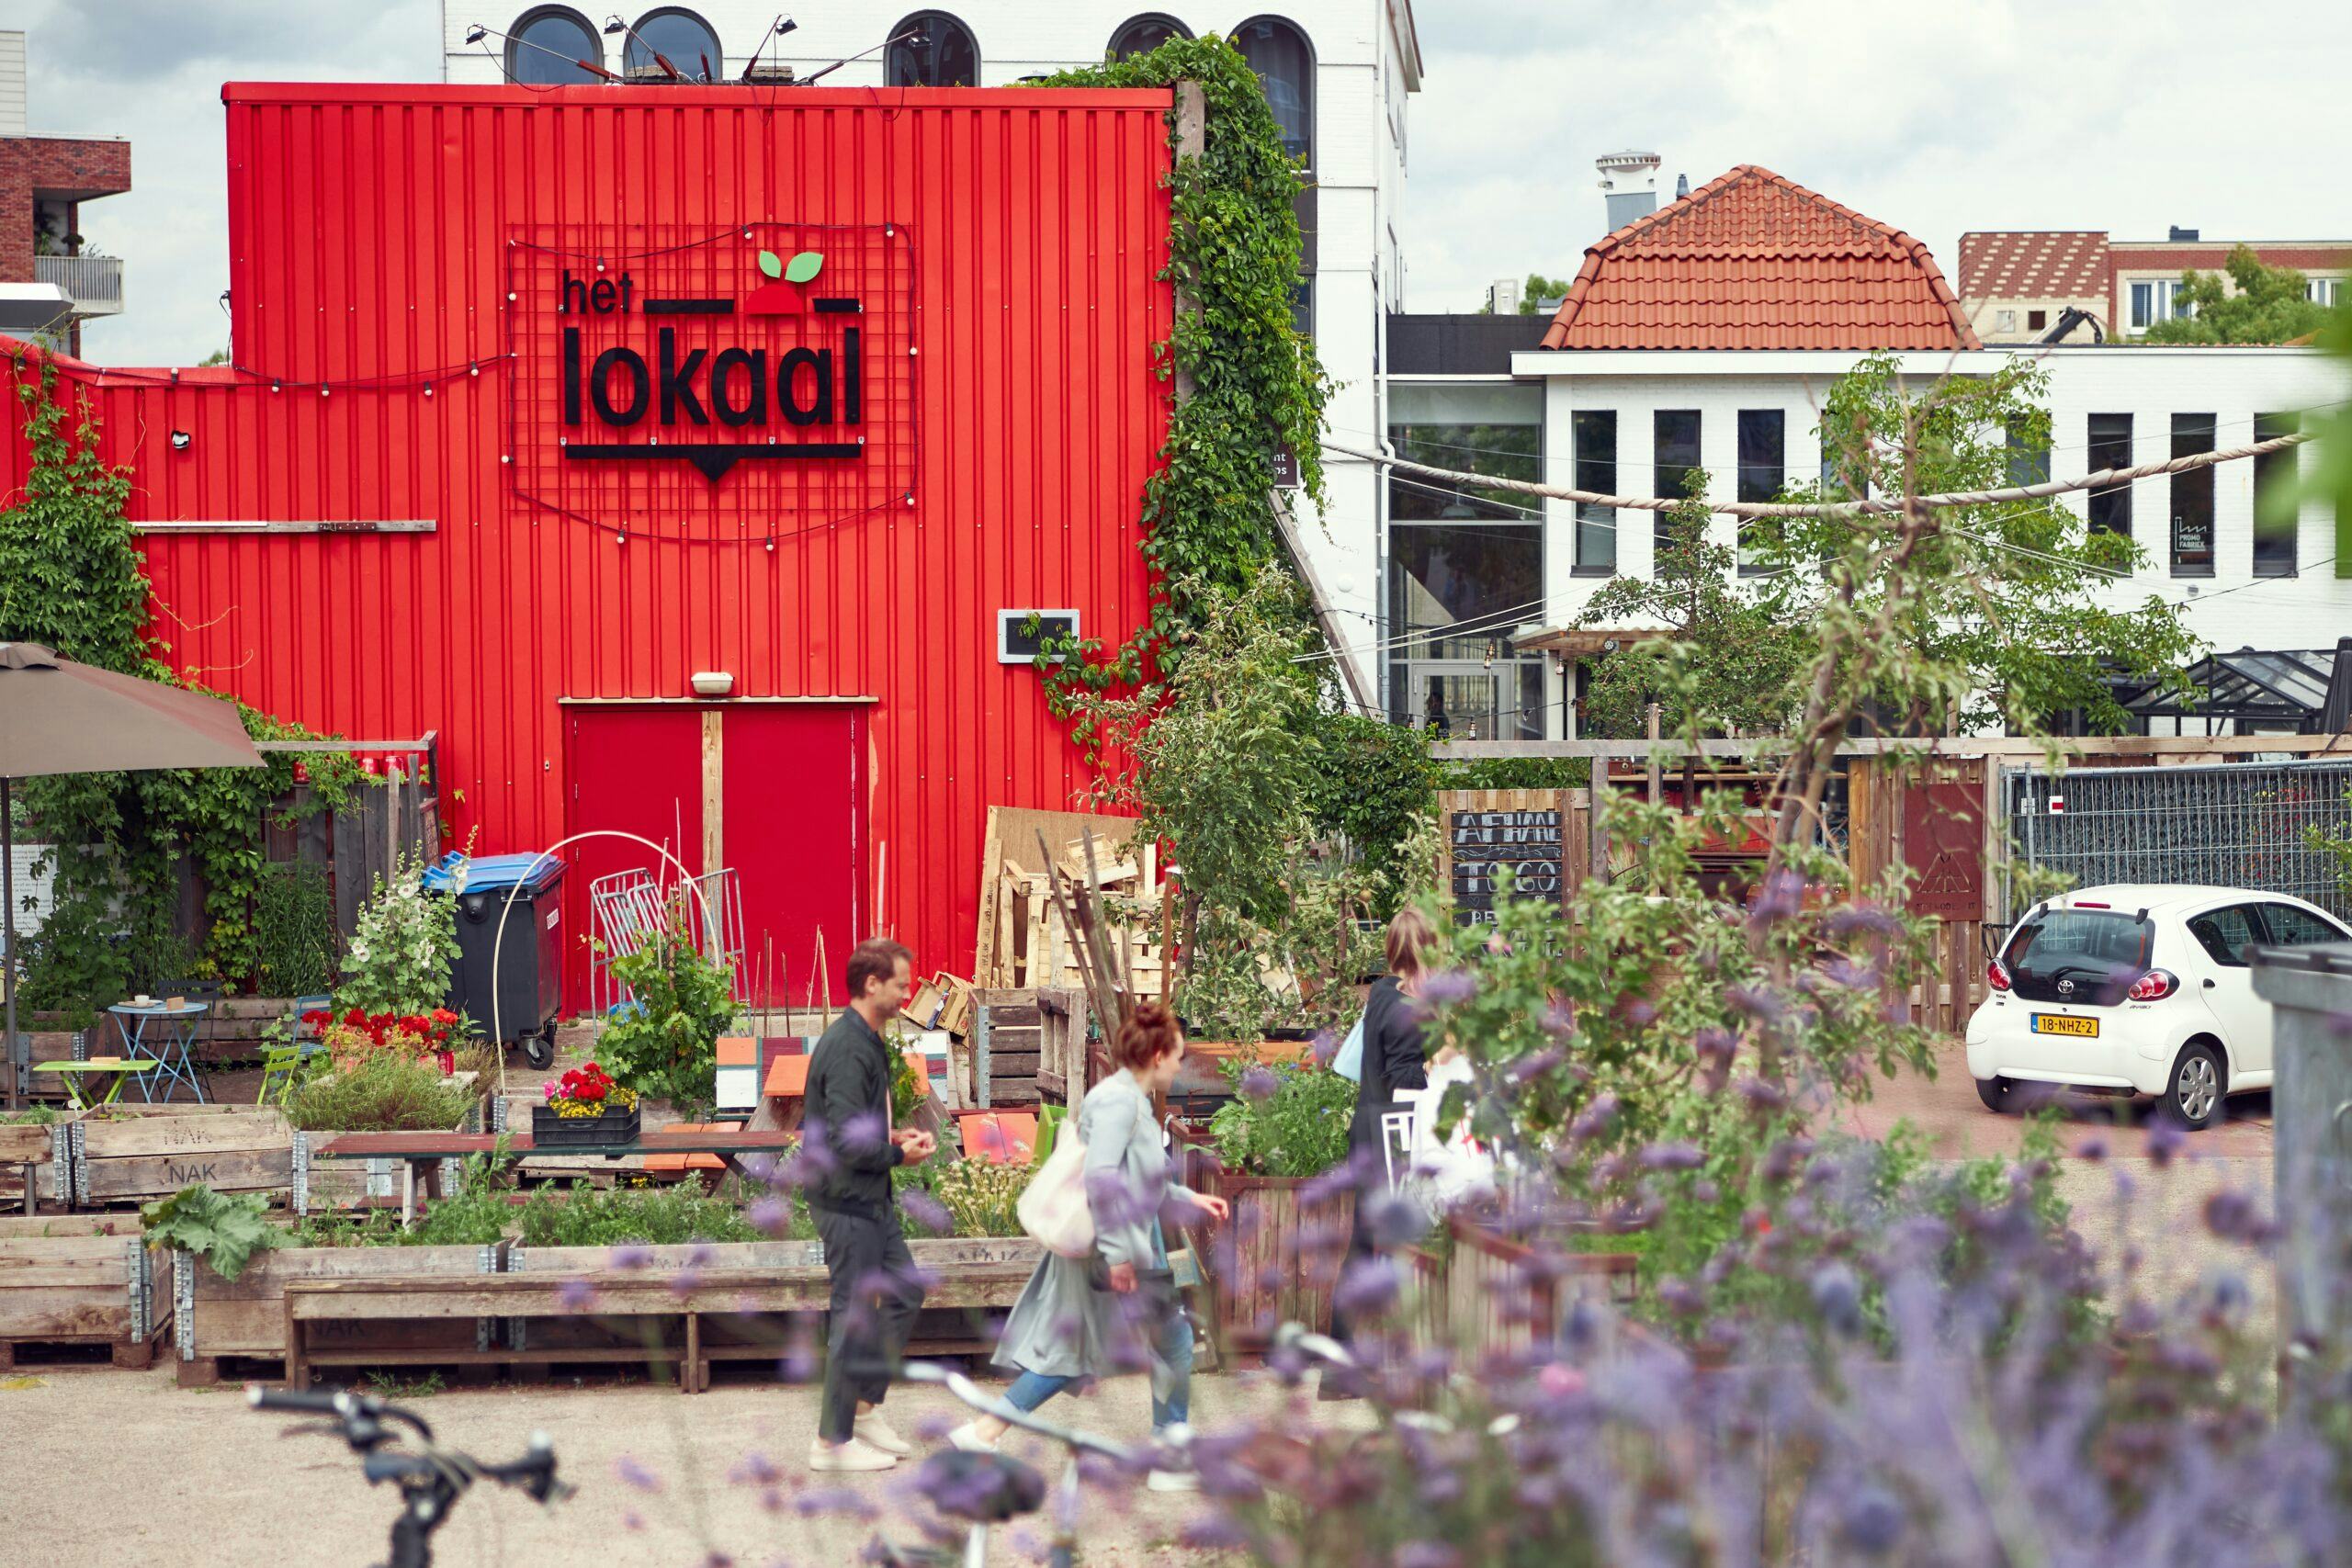 Het Lokaal, een permanente vestiging van een streekmarkt voor biologische producten in Amersfoort. Beeld Pim Hendriksen